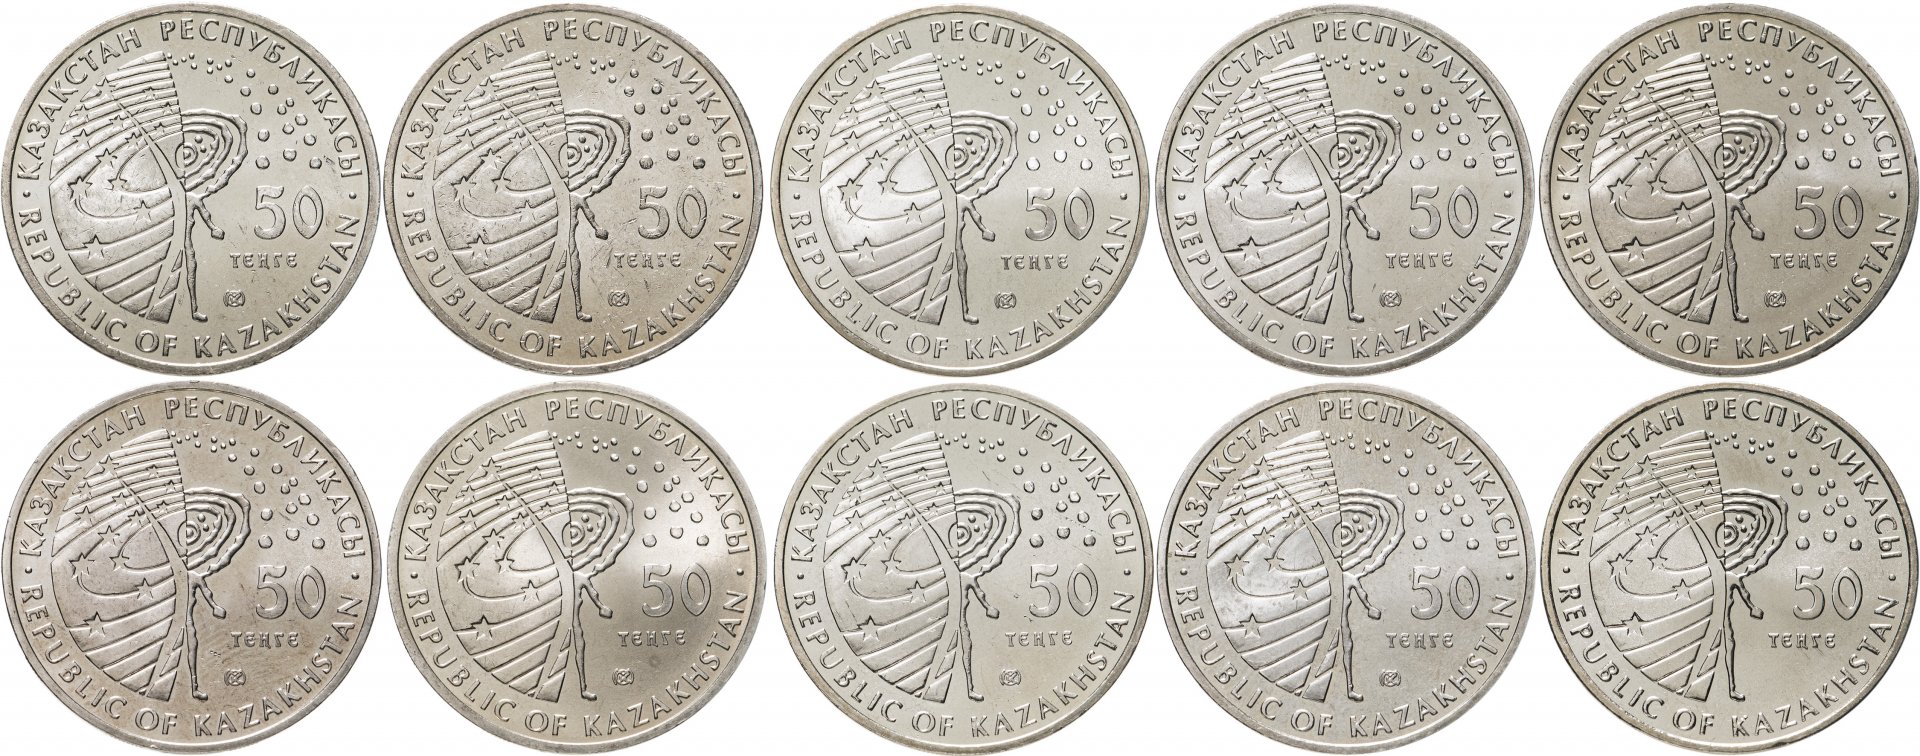 6300 тенге в рублях. Казахстан - 50 тенге (2006 г.). Монеты 50 тенге 2020 года. Казахстан набор монет Сакский стиль.